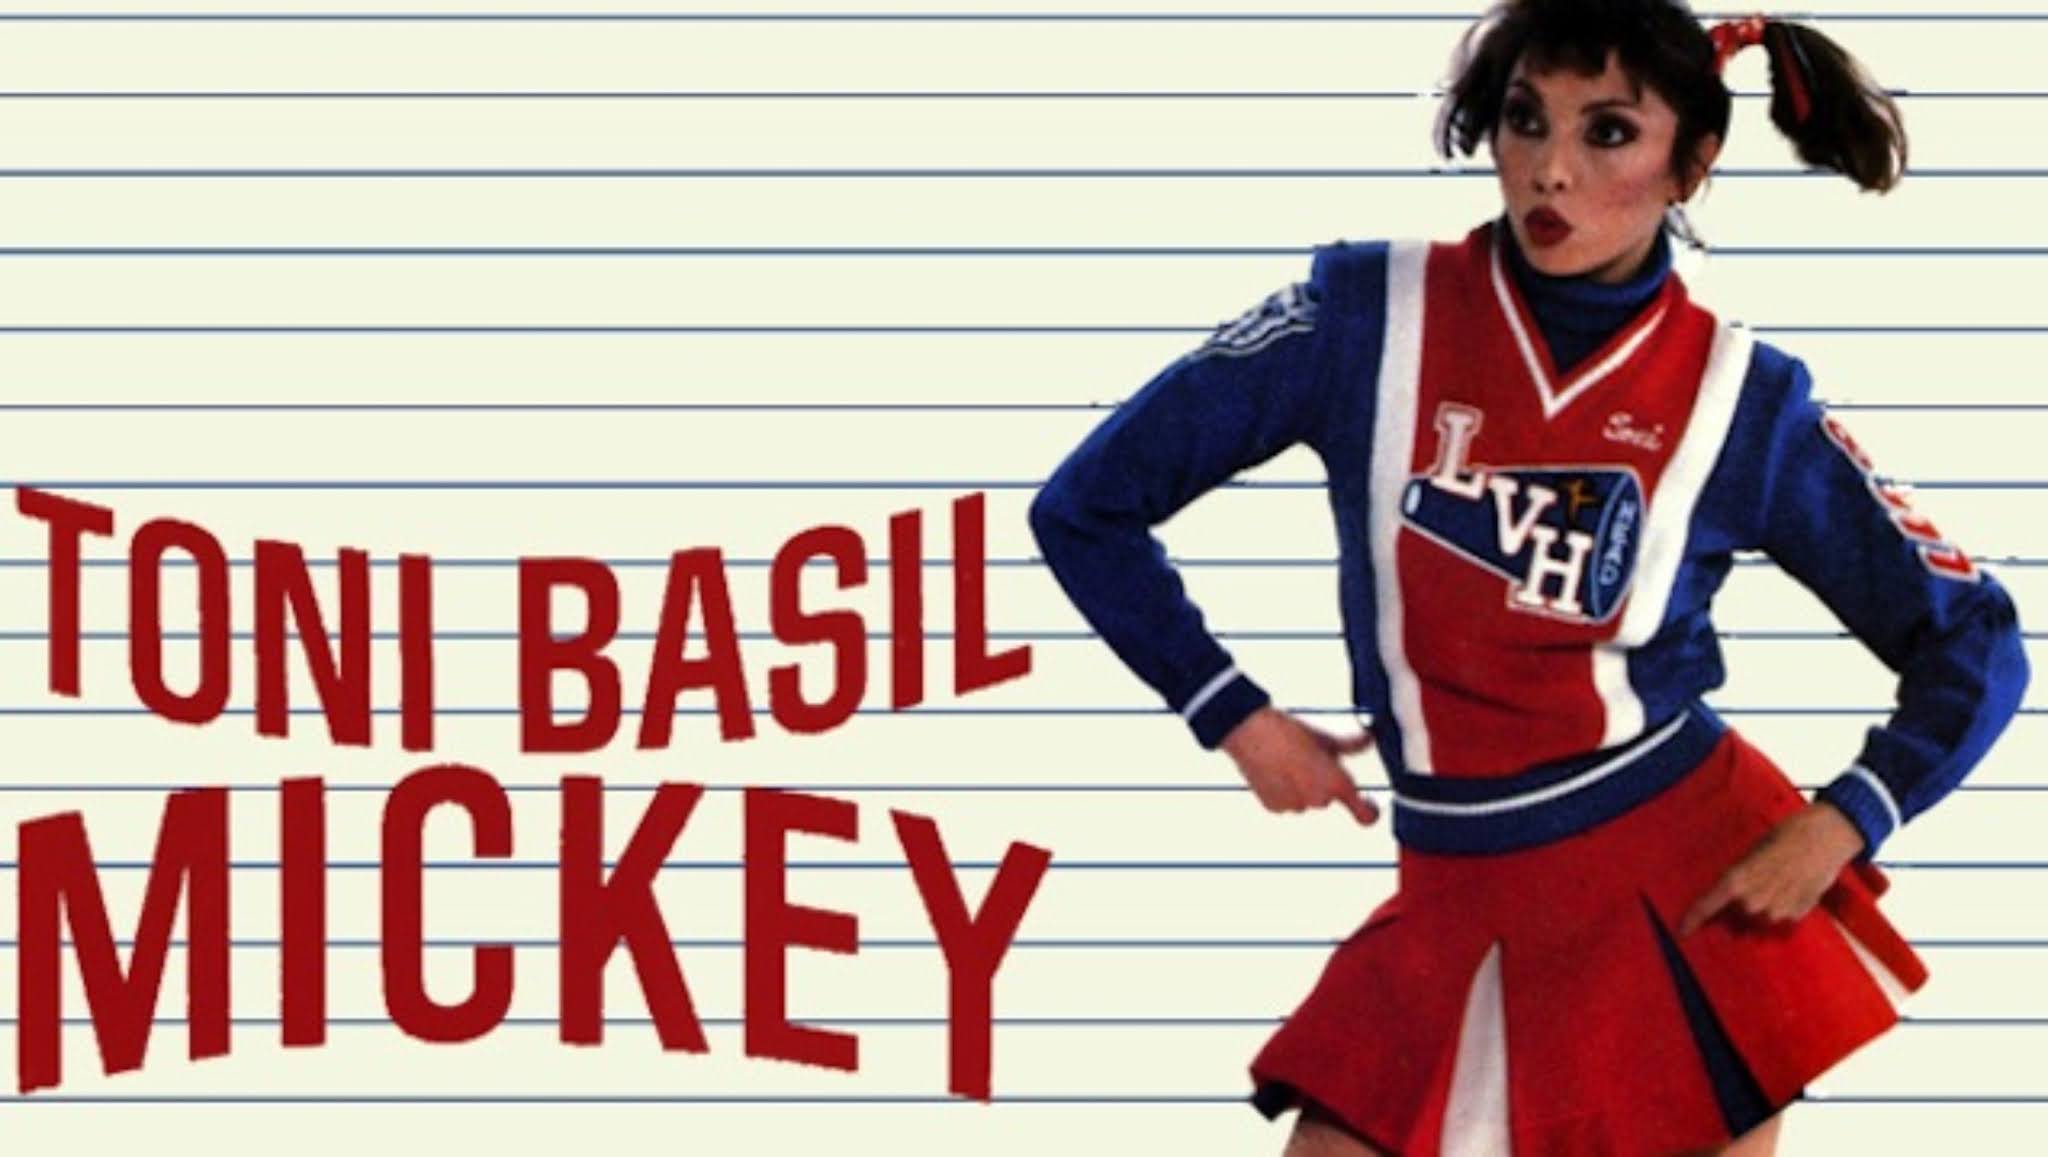 Hey mickey speed. Toni Basil - Mickey. Hey Mickey Тони Бэзил. Toni Basil 80s. Toni Basil Постер.